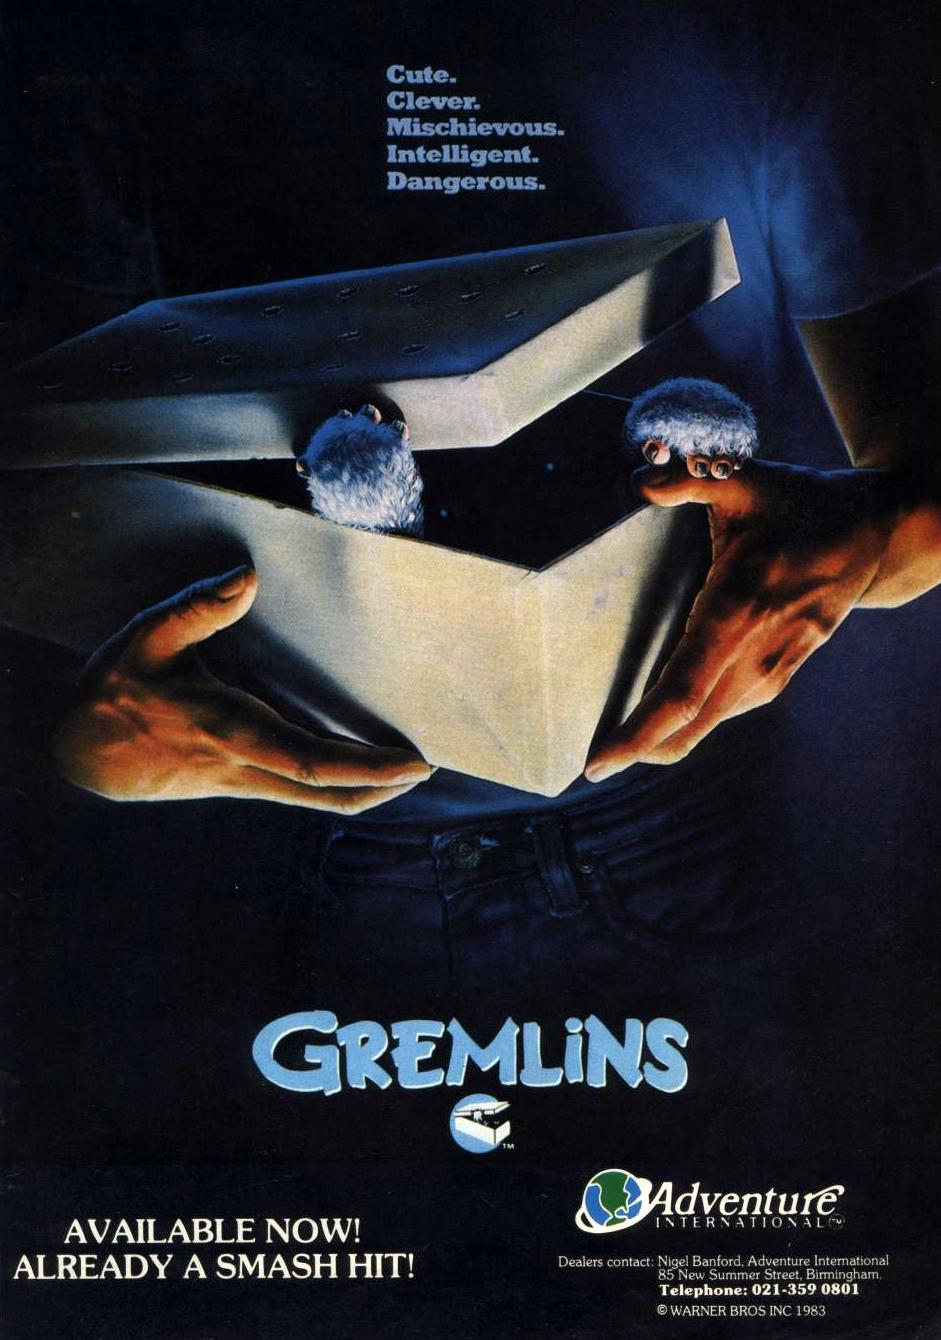 advertisement, Gremlins